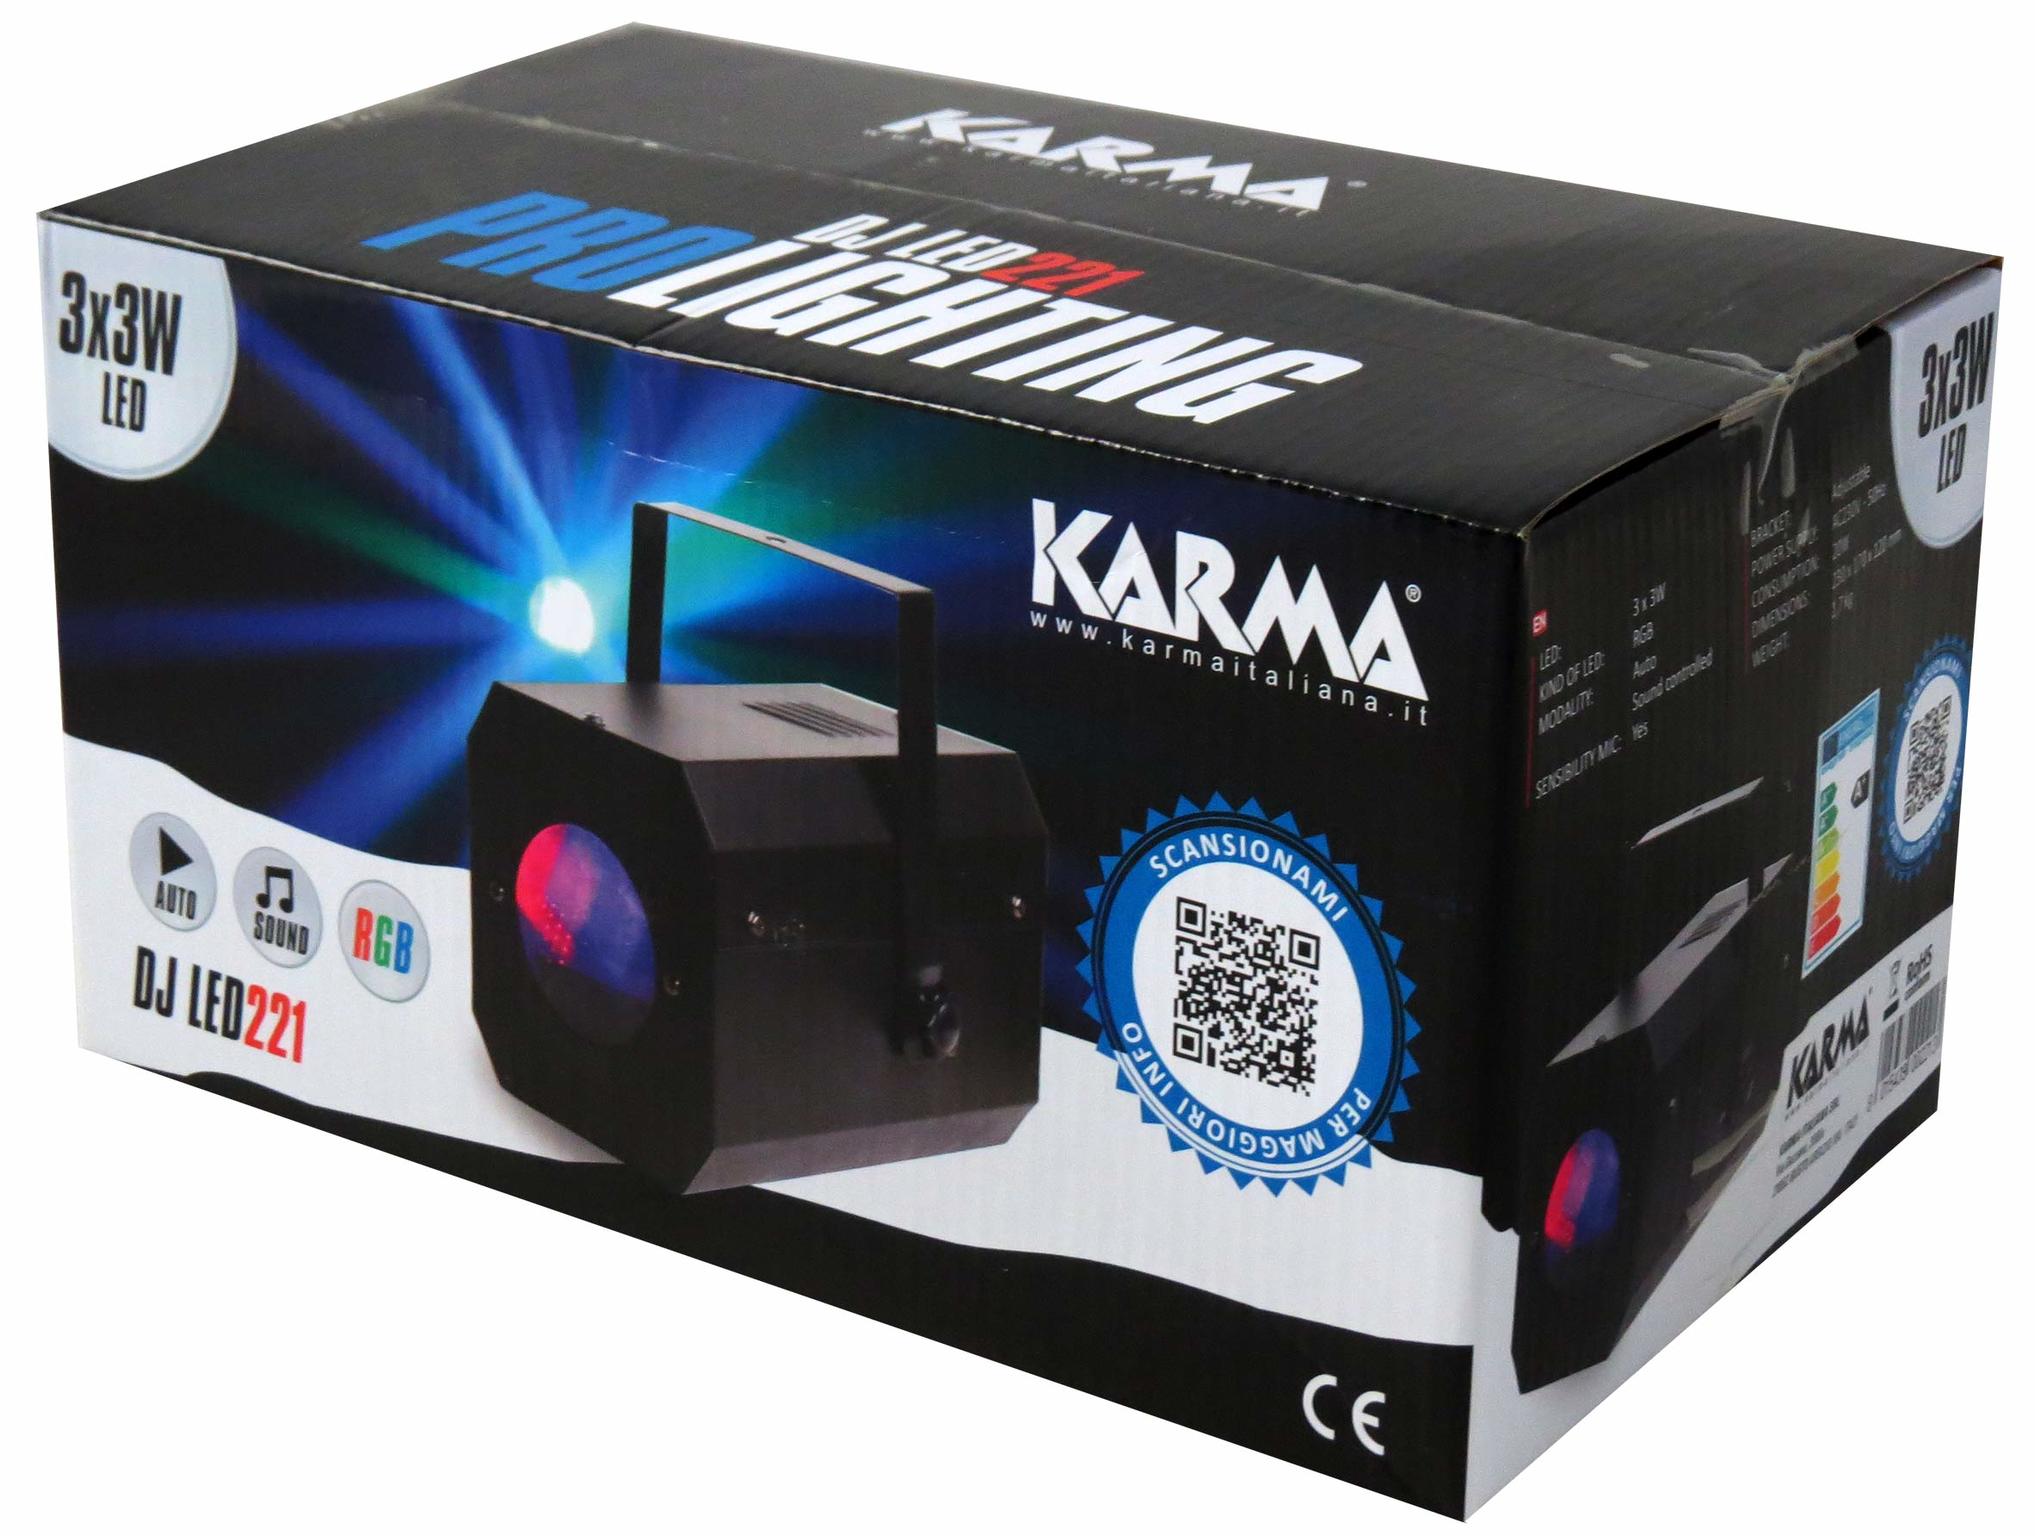 Karma DJ LED221